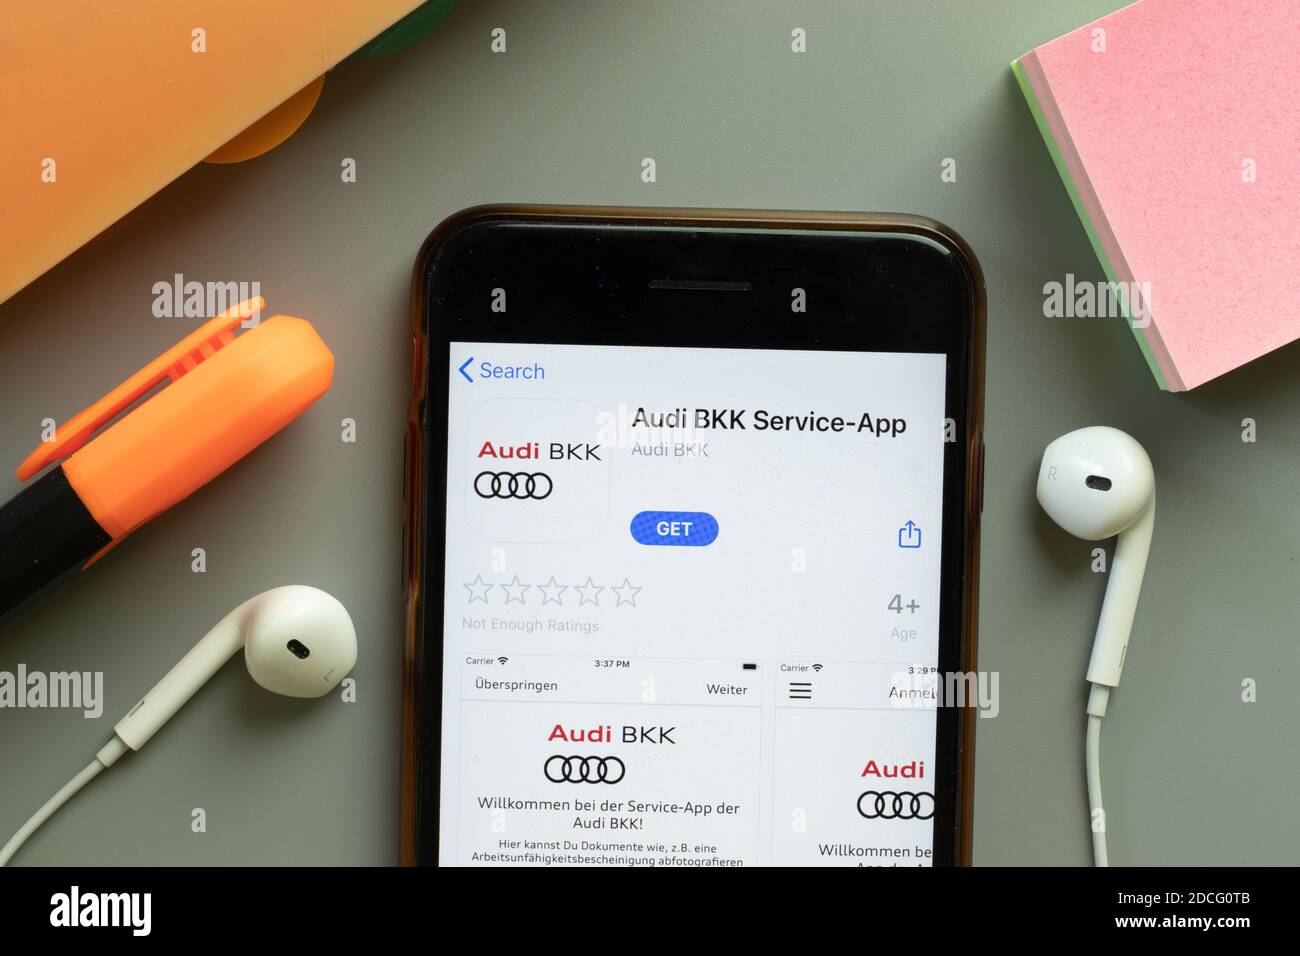 New York, Stati Uniti - 7 novembre 2020: Audi BKK Service app store logo sullo schermo del telefono, editoriale illustrativo. Foto Stock